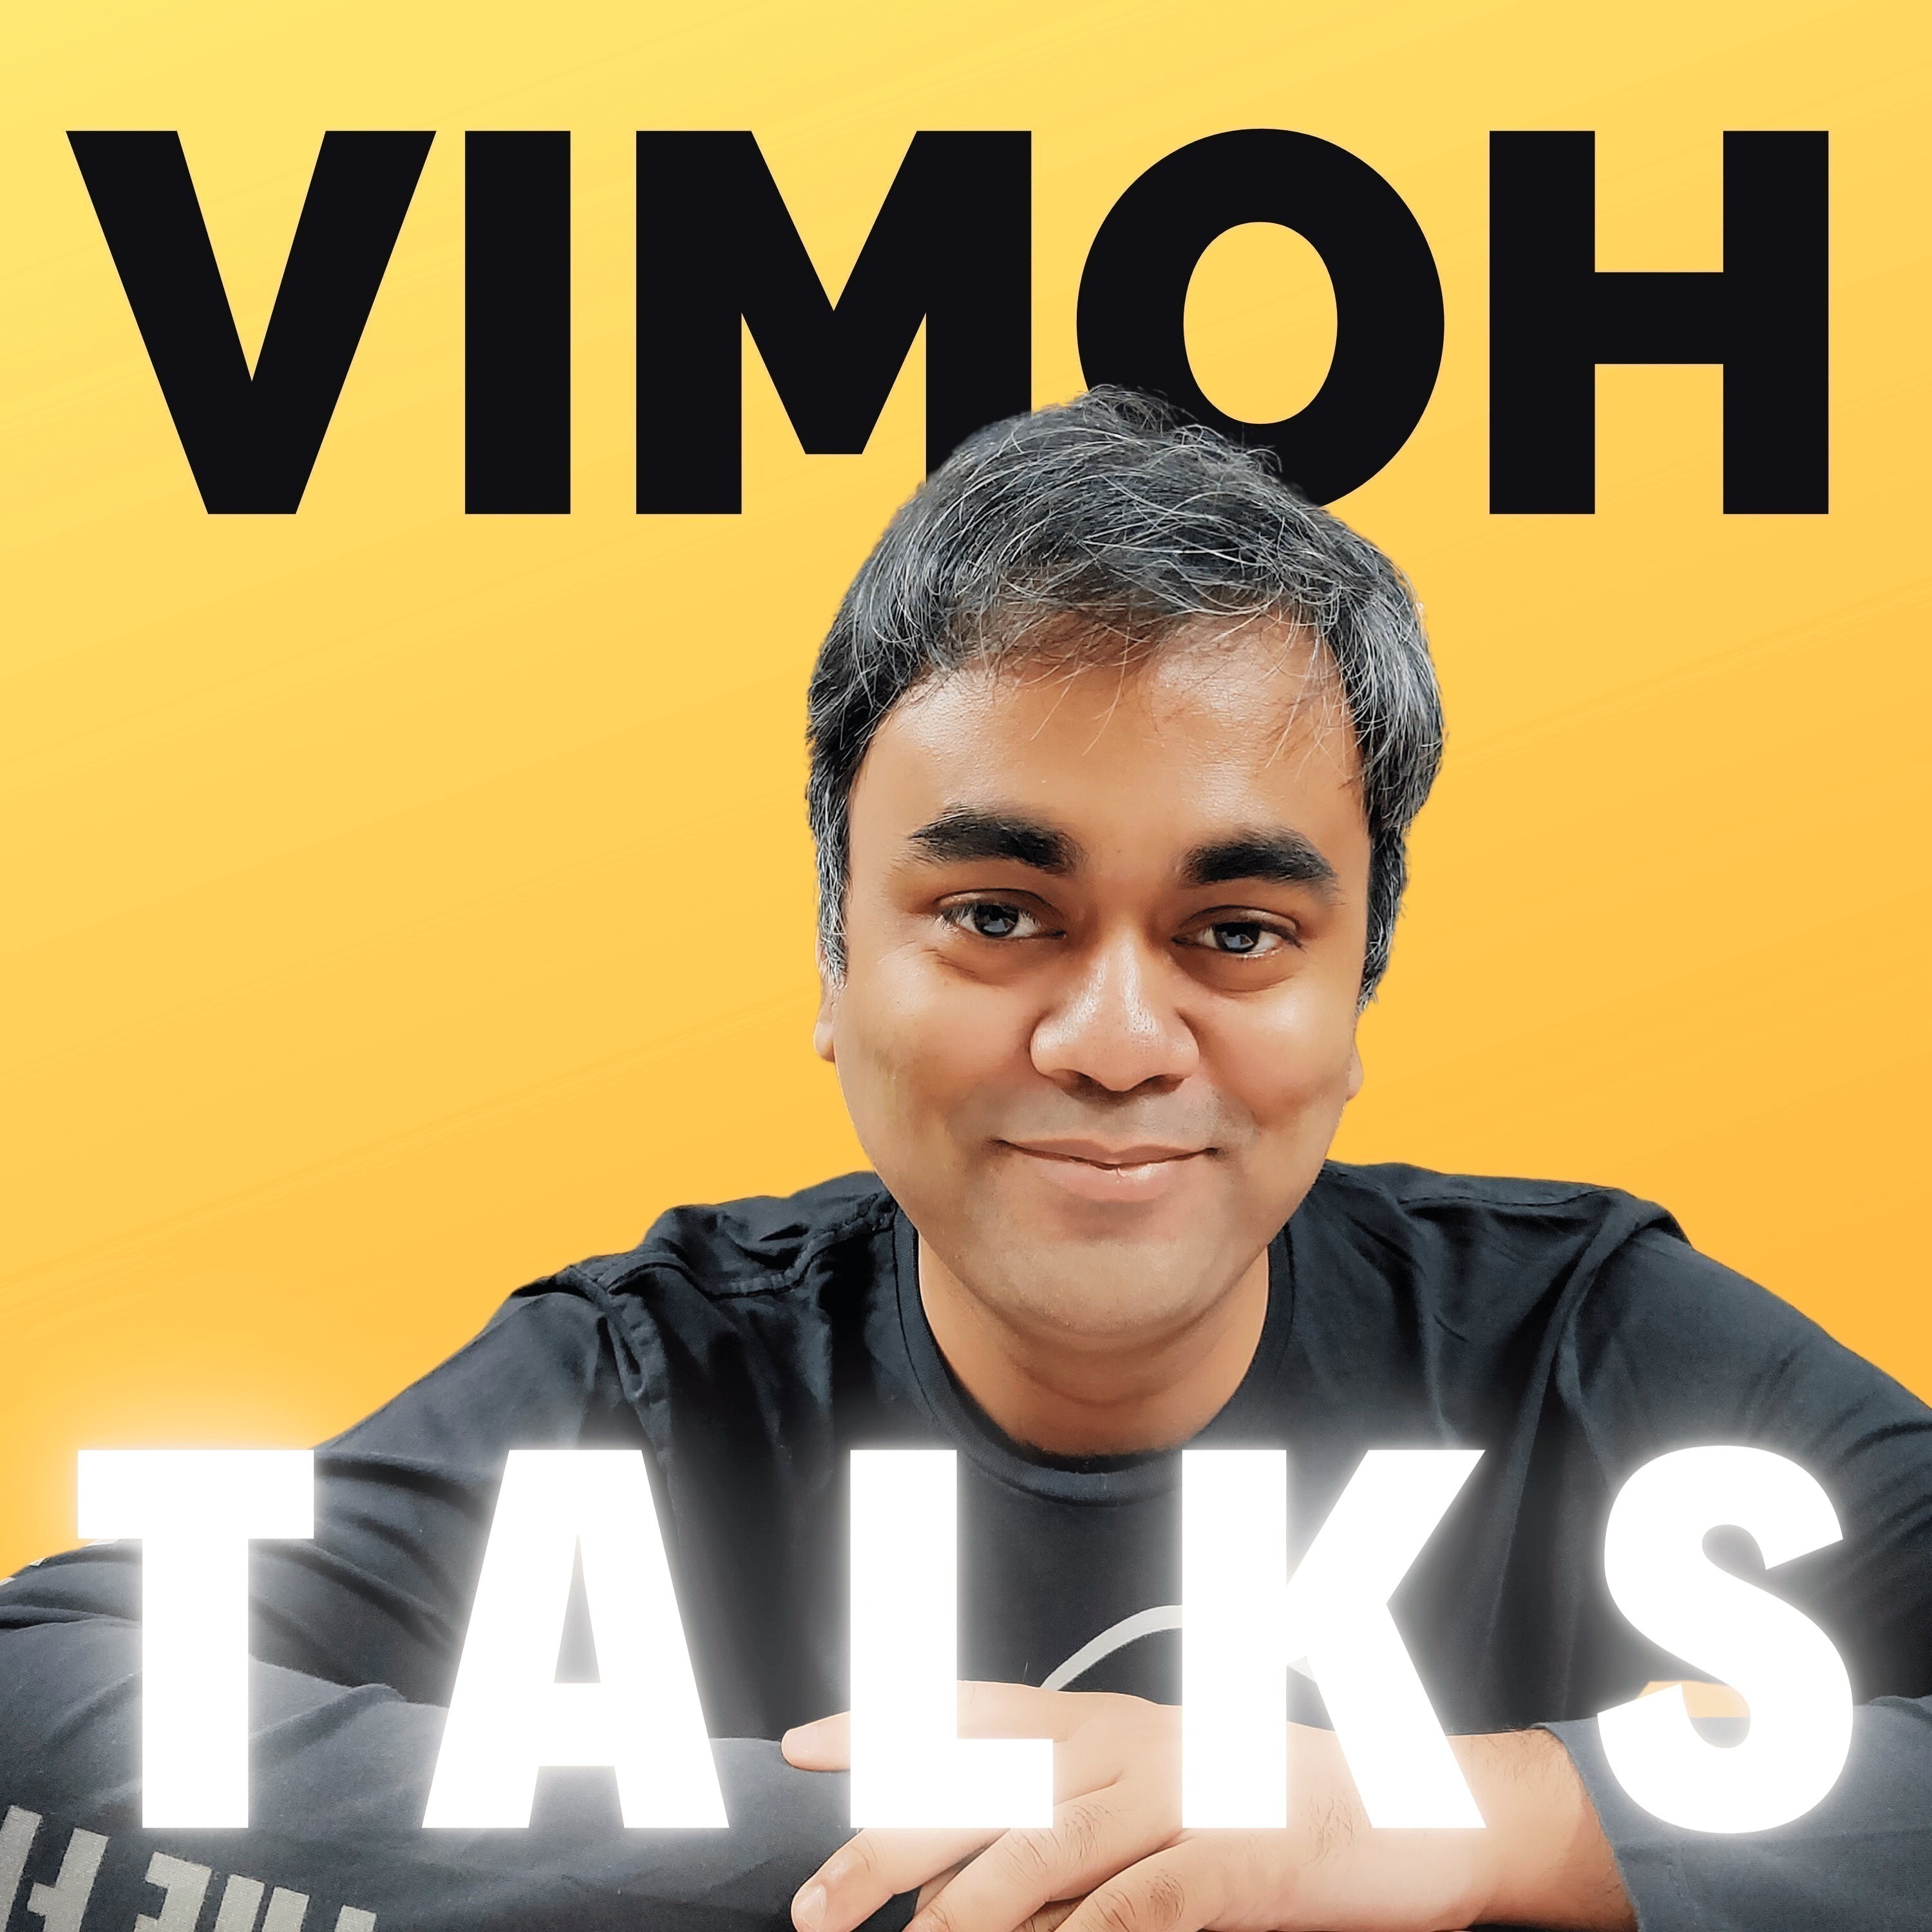 Vimoh Talks